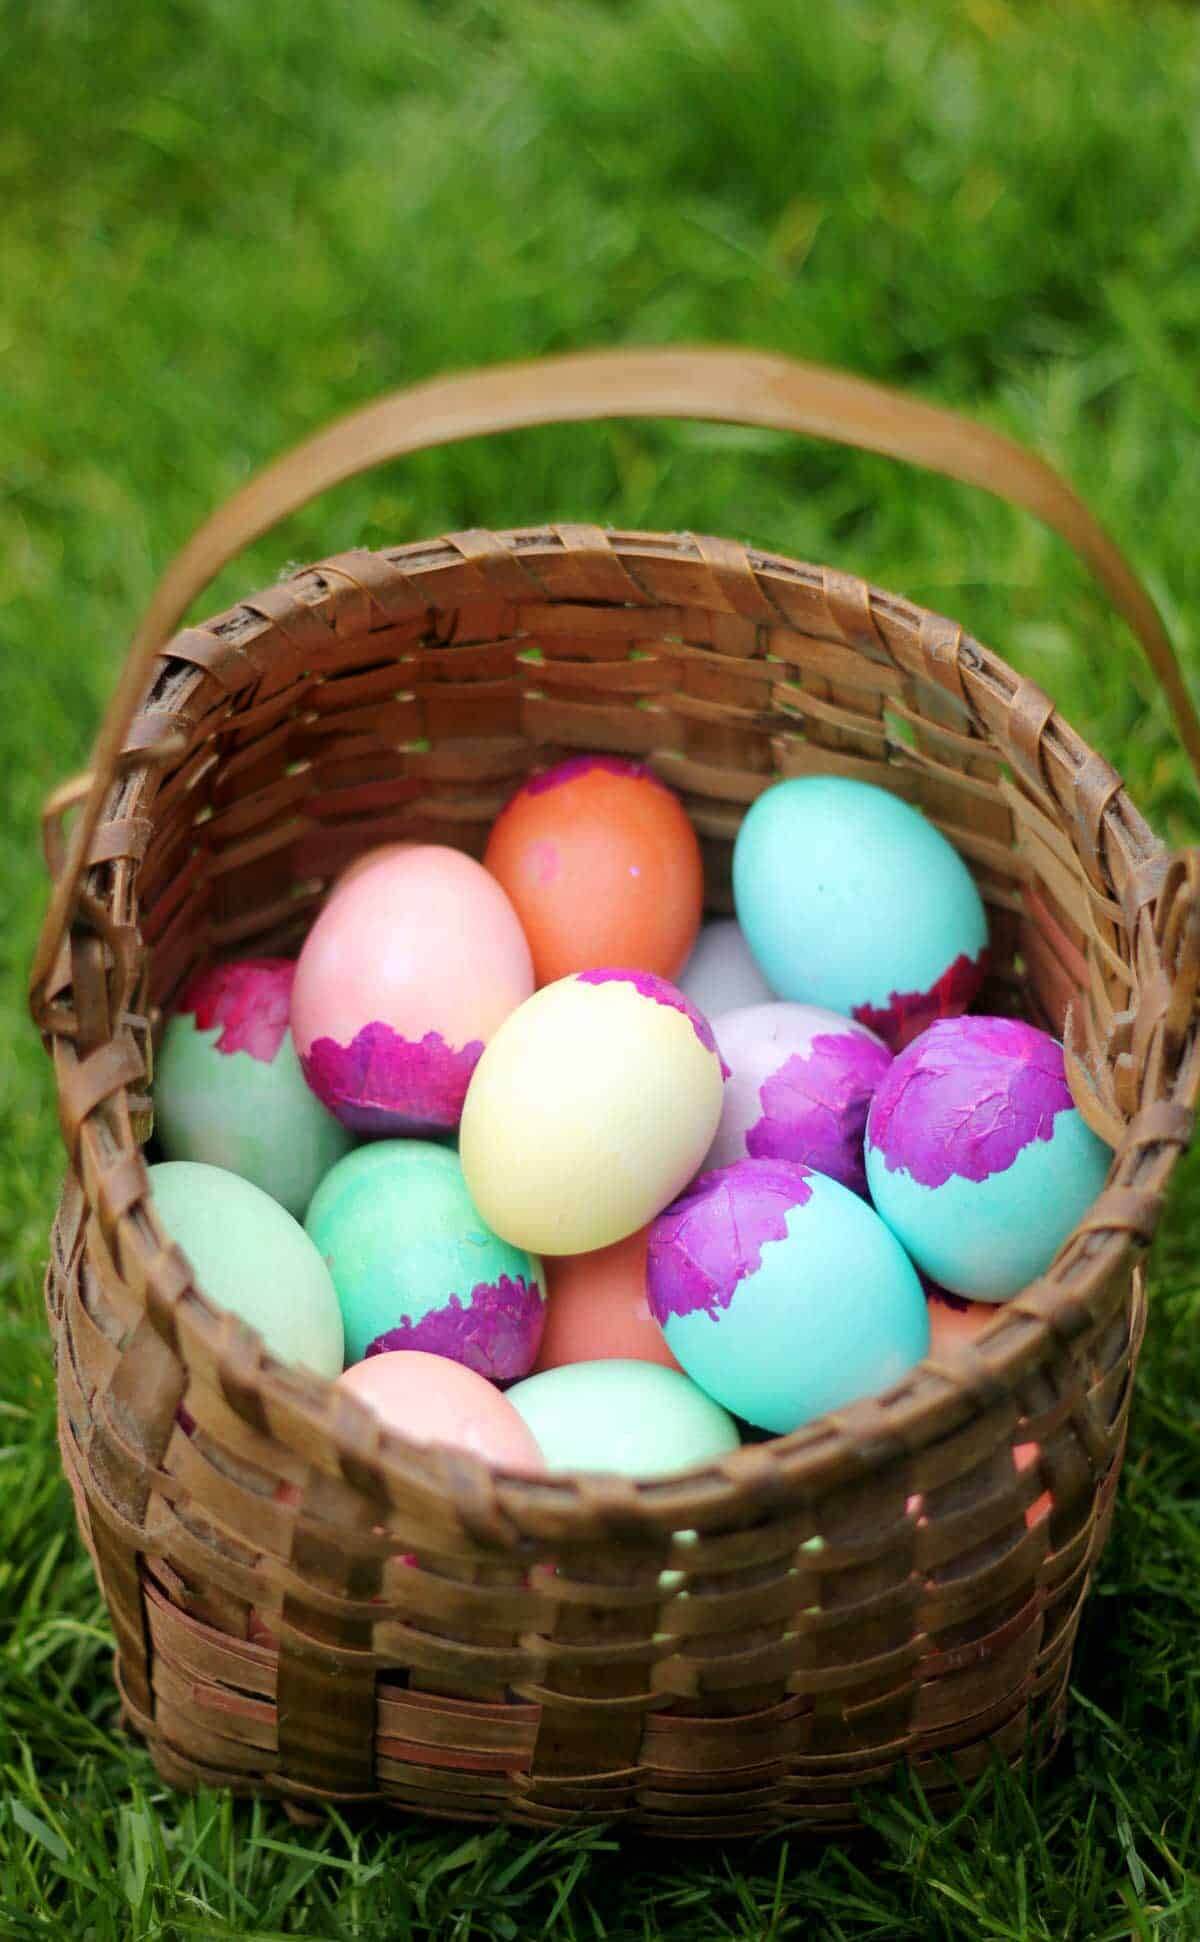 Cascarones confetti eggs in basket